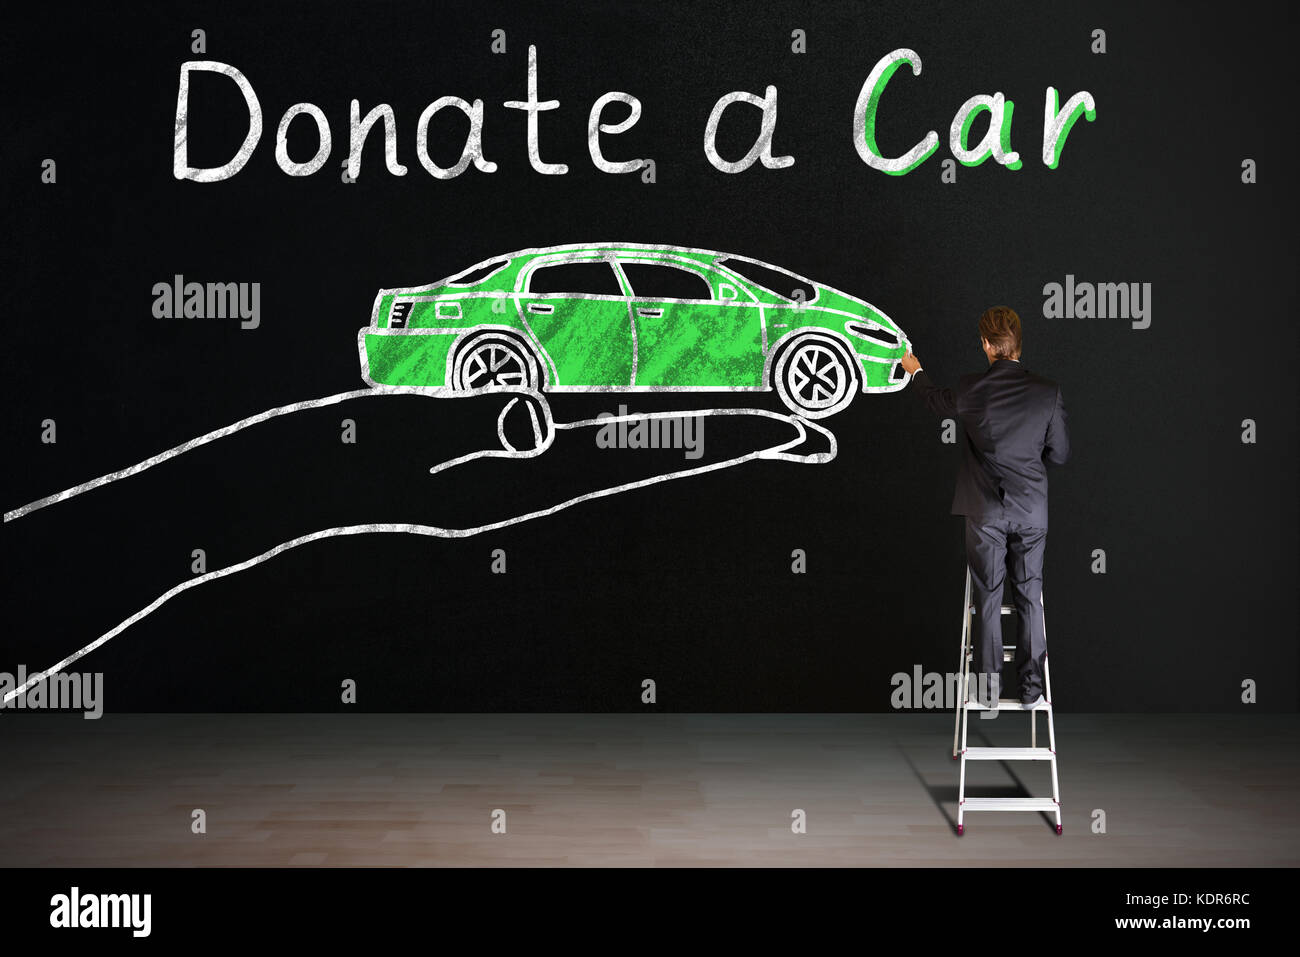 Vue arrière du businessman standing on staircase encombrement la voiture concept de don sur tableau noir Banque D'Images